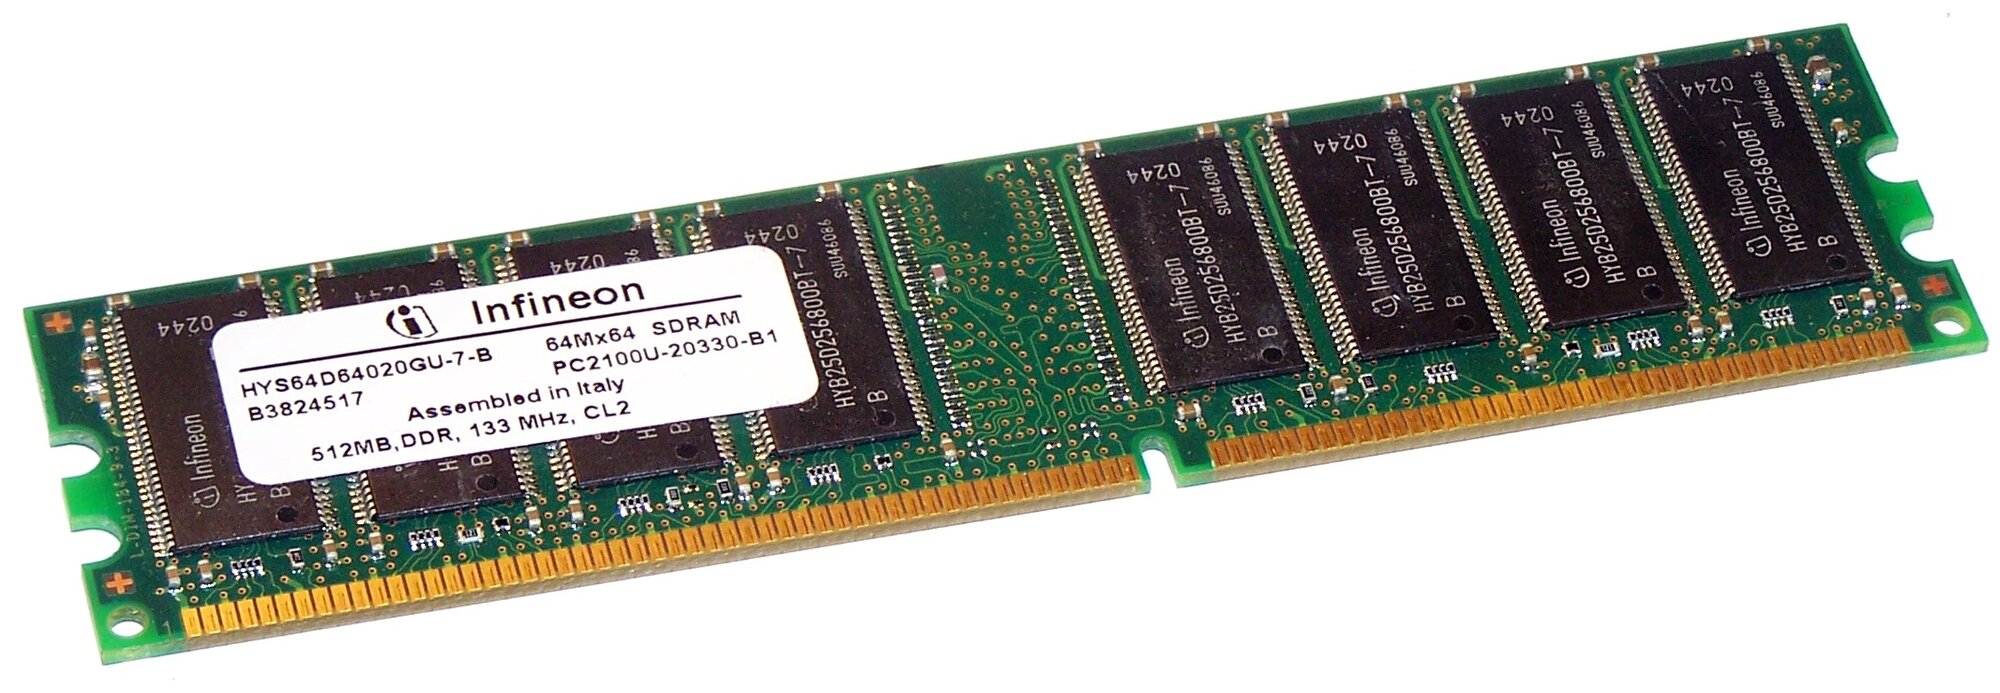 Оперативная память Infineon Оперативная память Infineon HYS64D64020GU-7-B DDR 512Mb